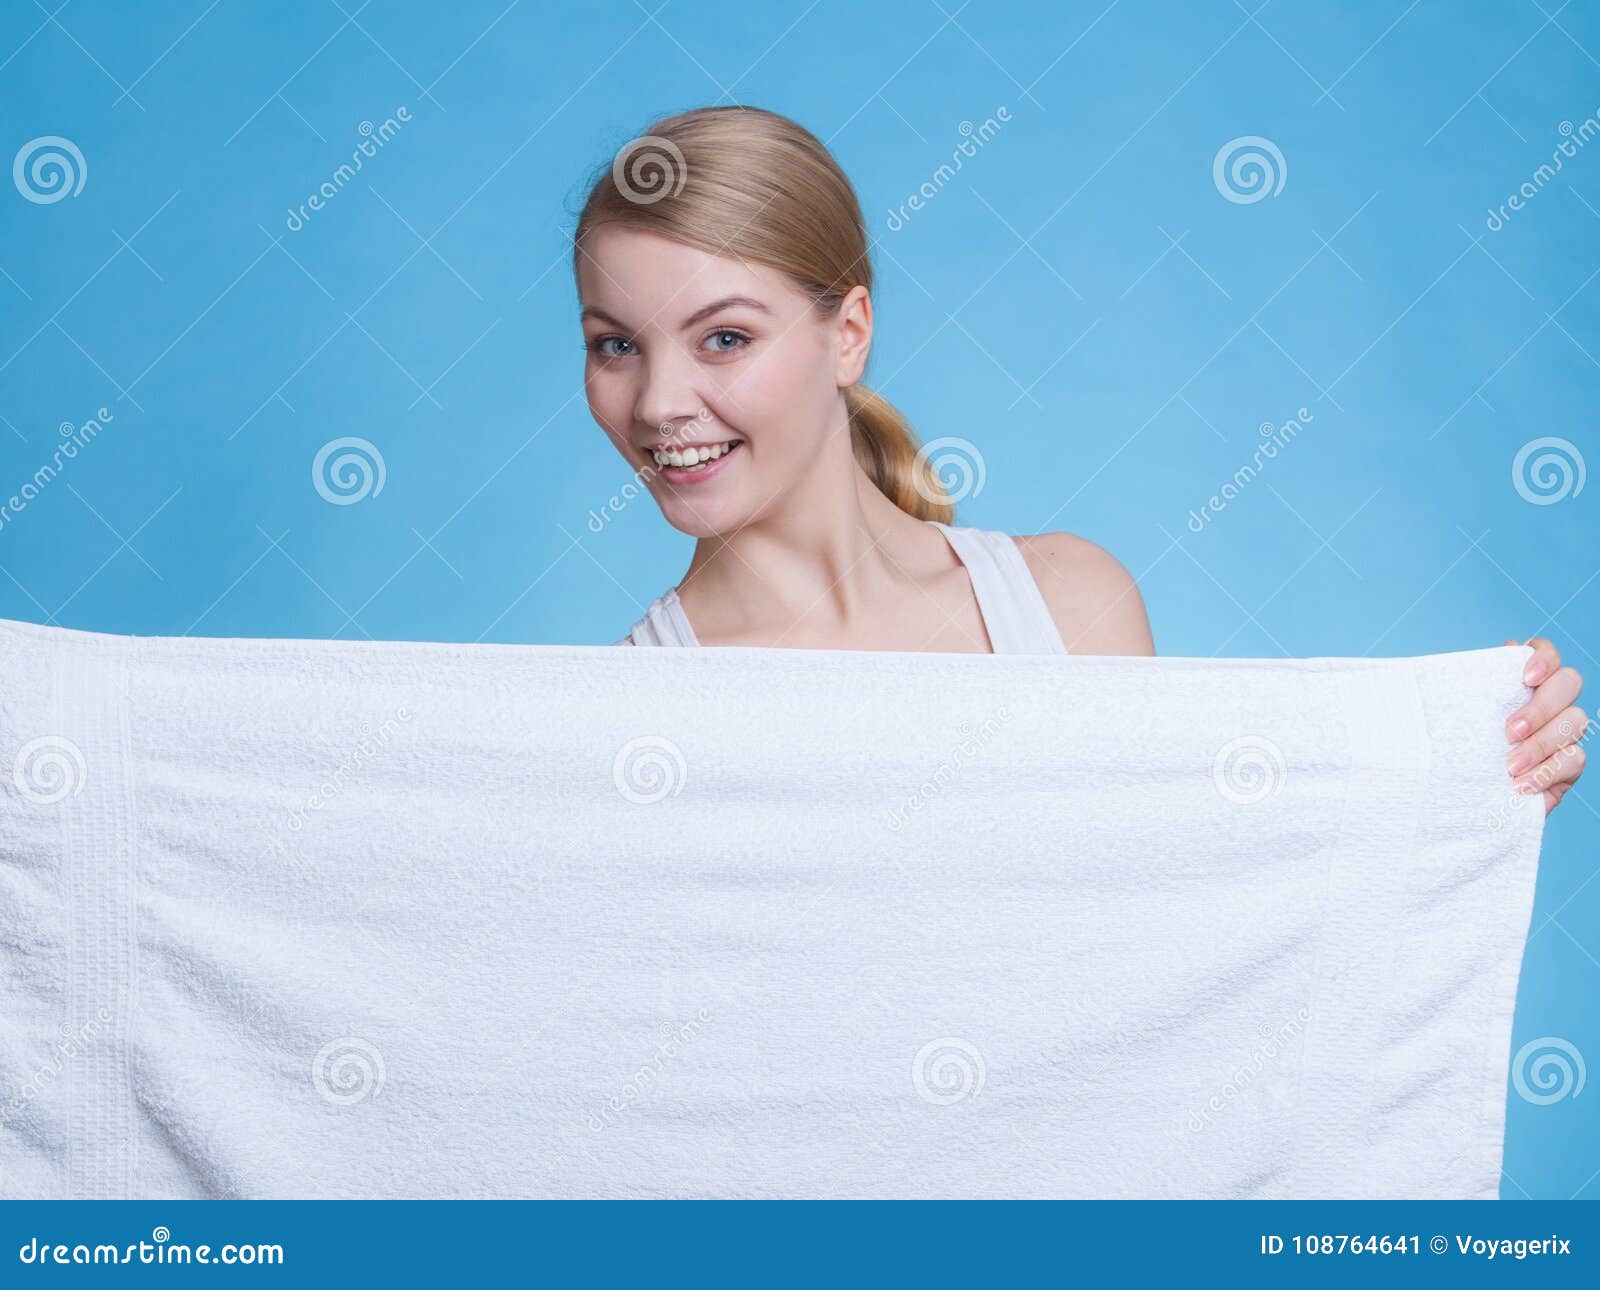 Слетело полотенце. Человек в полотенце. Девушка держит полотенце. Девушка в белом полотенце. Девушка с полотенцем в руках.